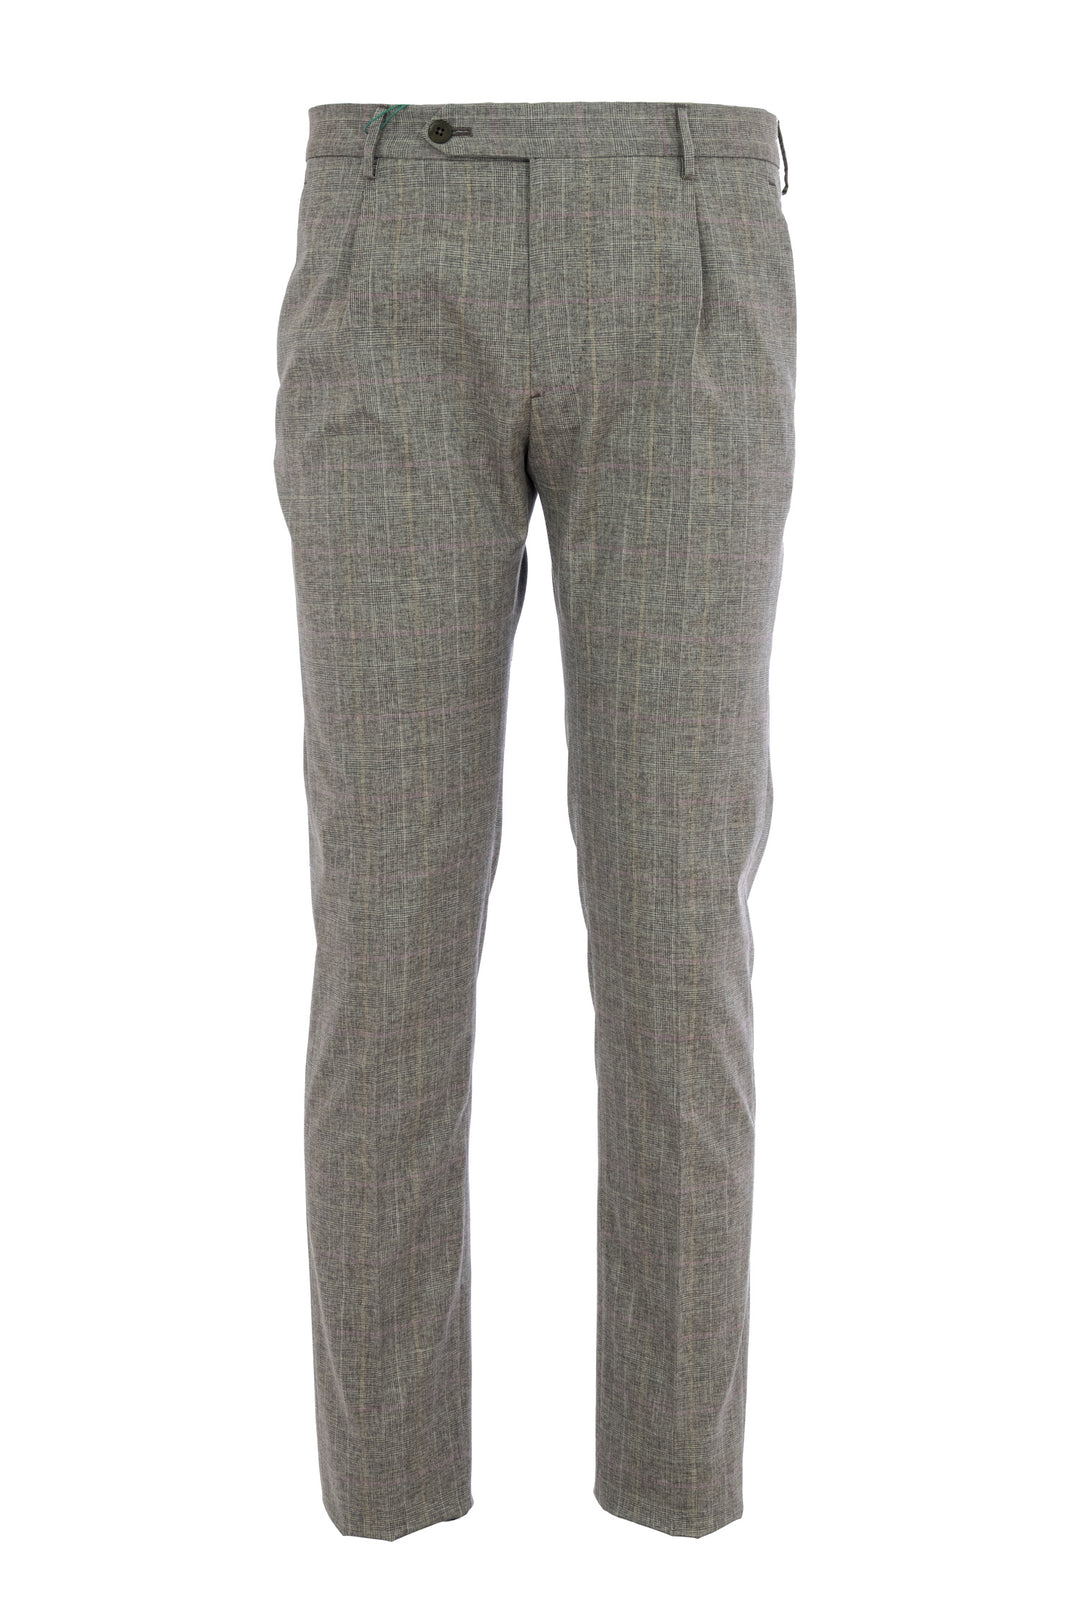 BERWICH Pantalone in lana elasticizzata check marrone - Mancinelli 1954